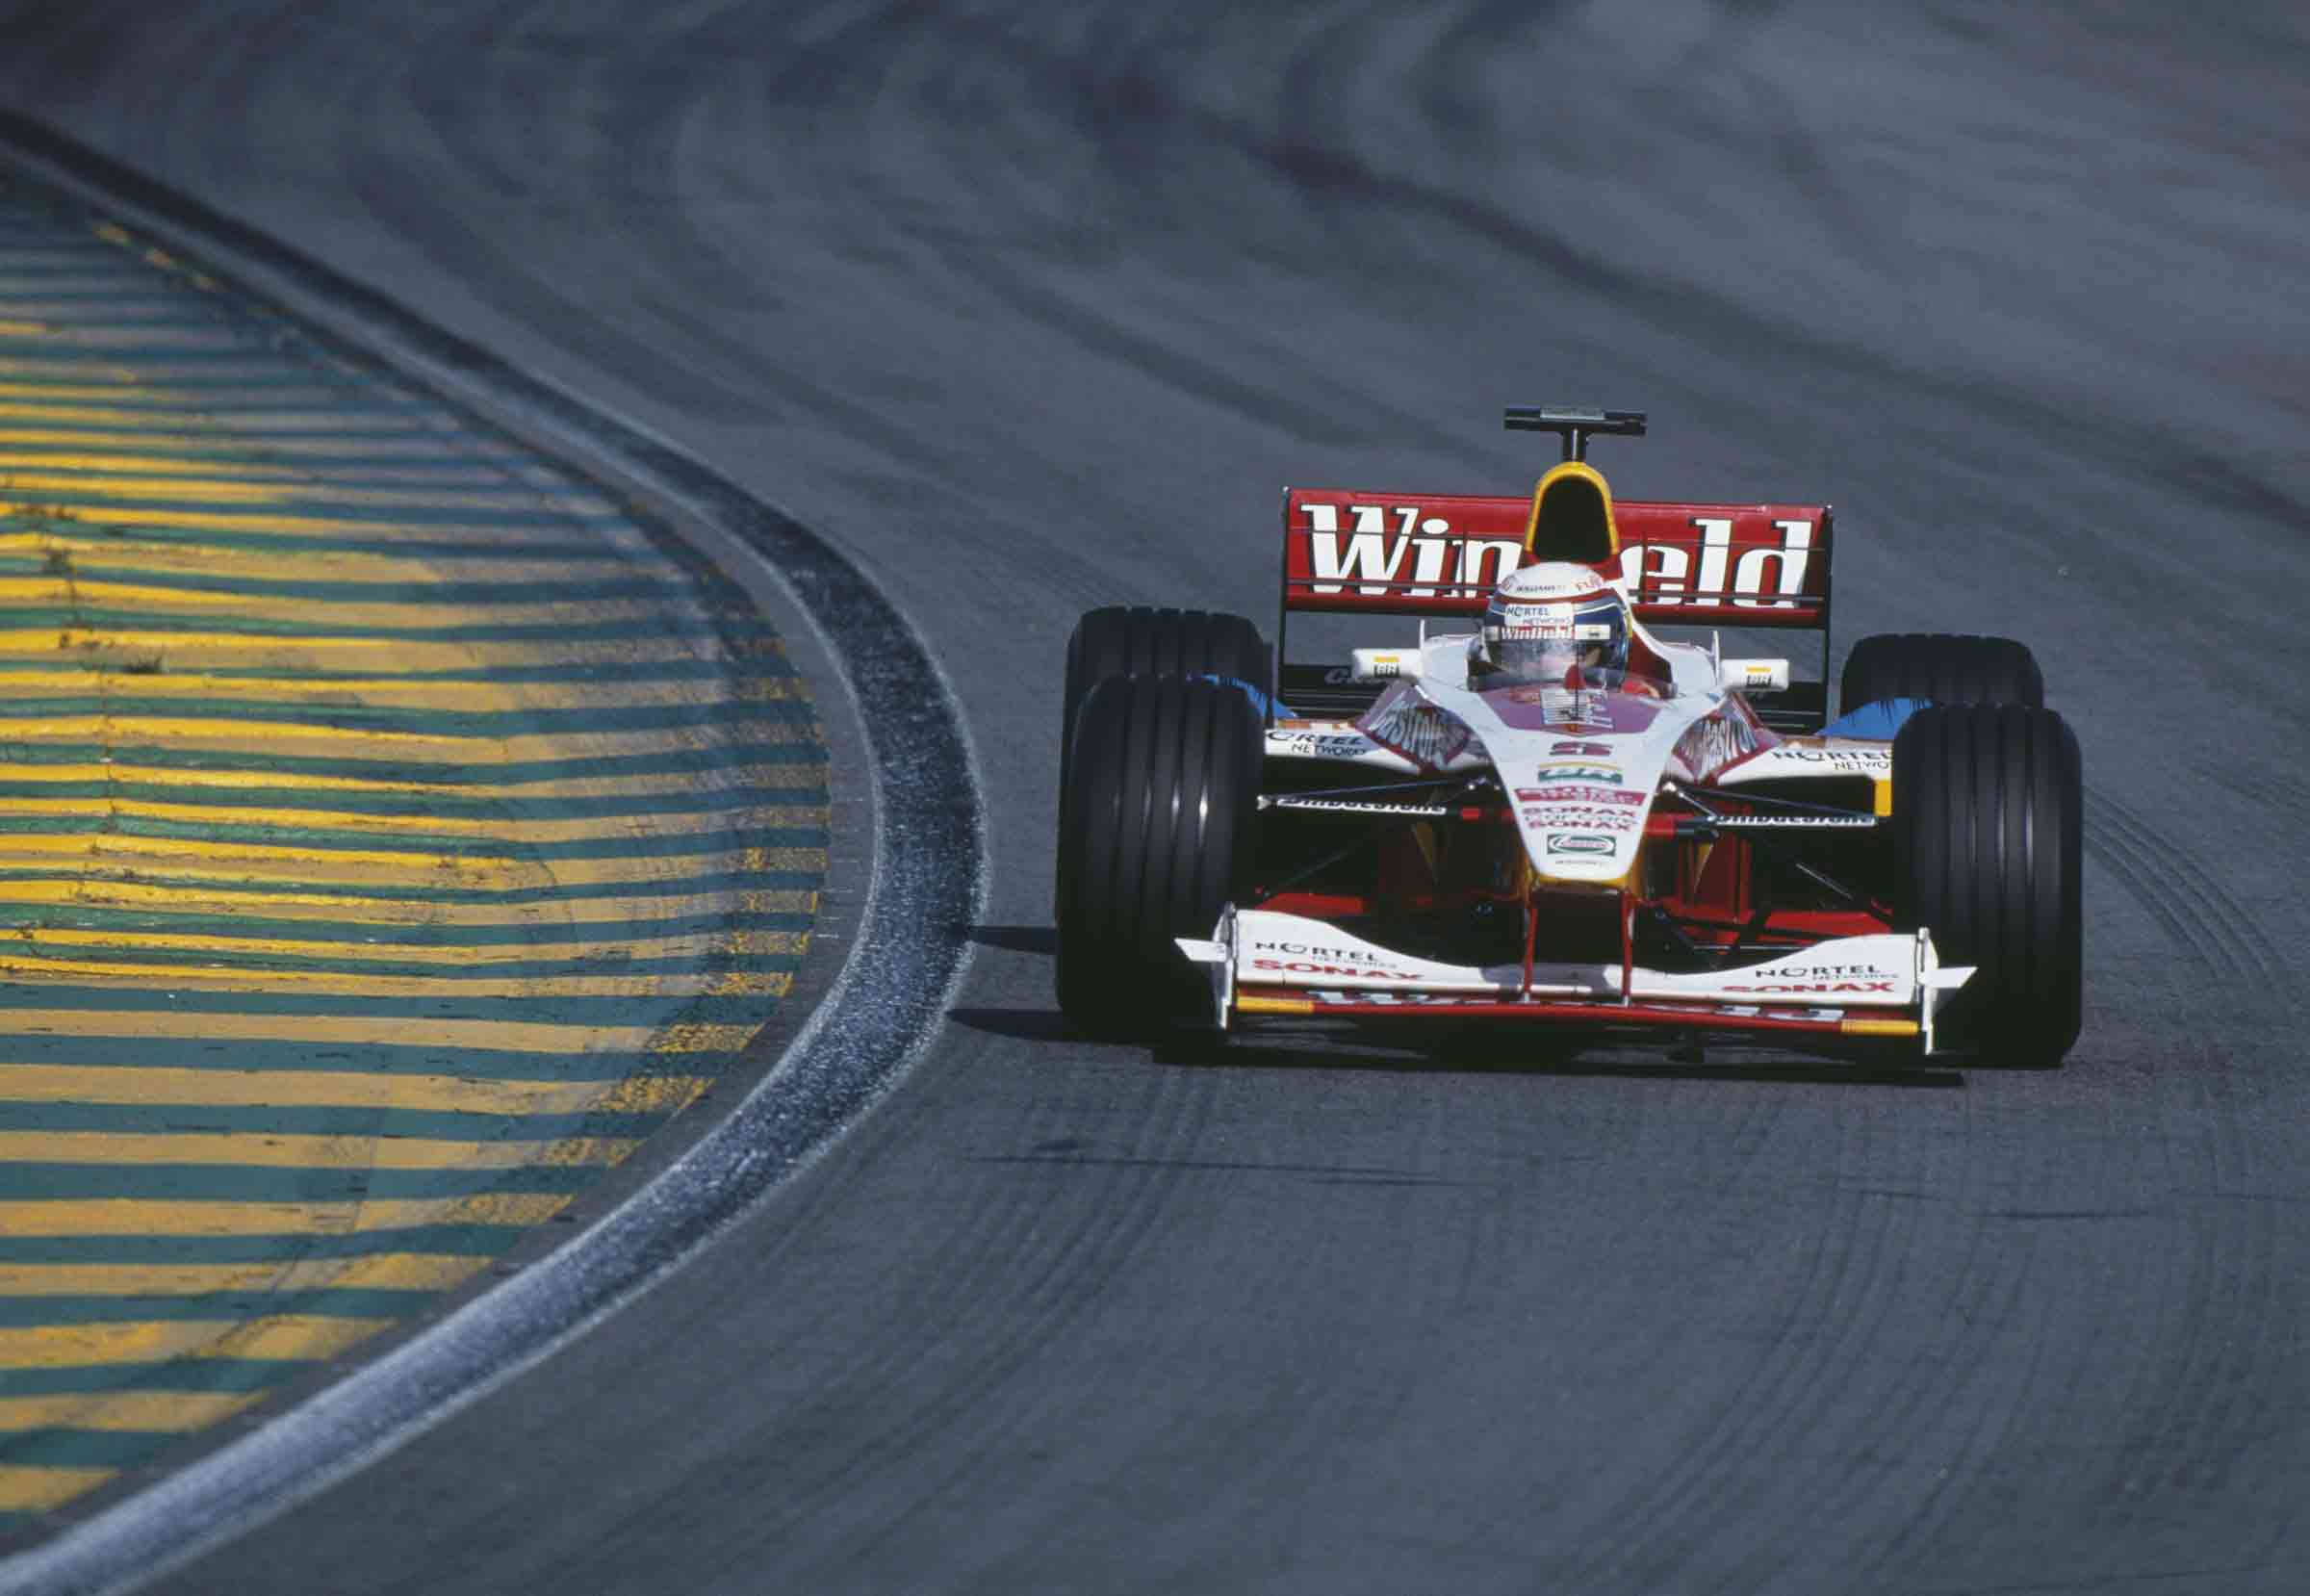 O sucesso nos EUA trouxe Zanardi de volta à F1 pelas mãos da Williams, seguindo os passos de Jacques Villeneuve. O italiano foi companheiro de Ralf Schumacher. Eis ele em ação no GP do Brasil